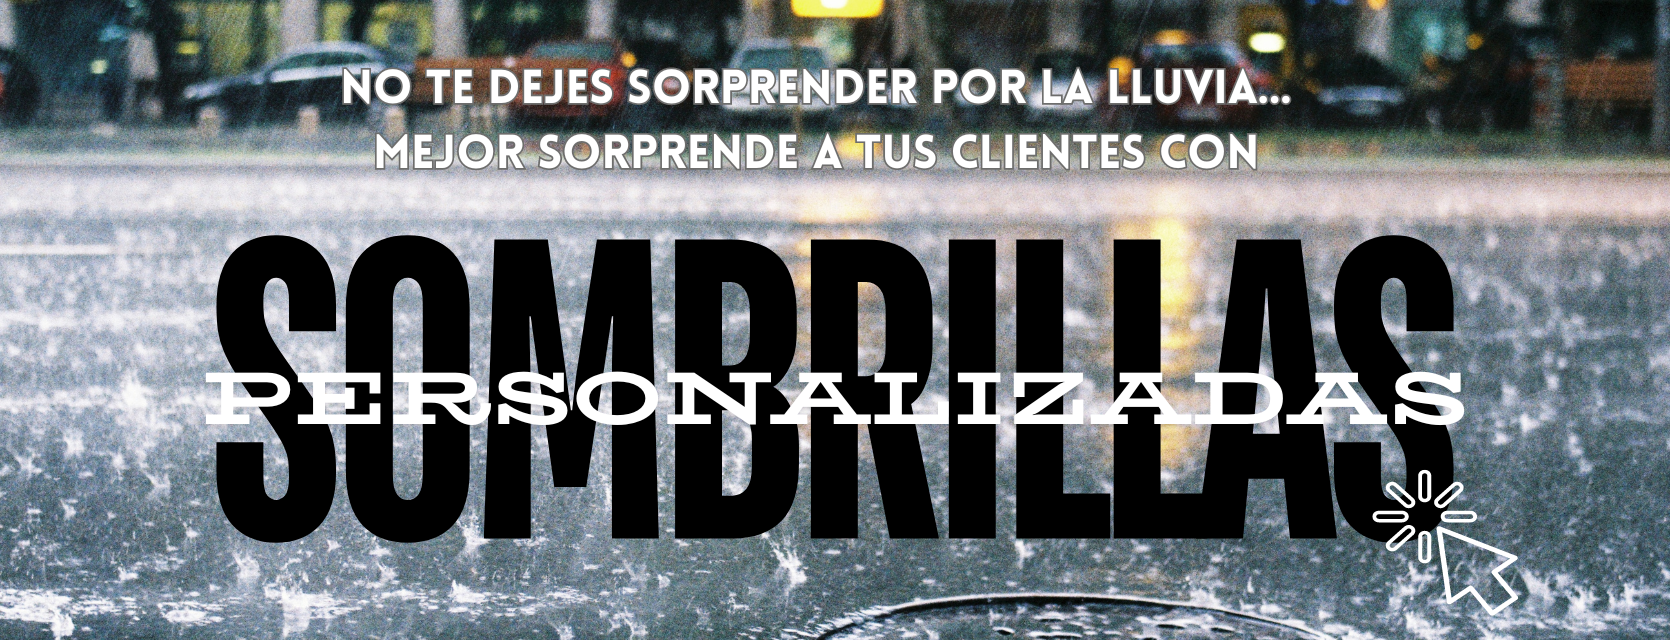 Sliders Sombrillas Personalizadas Medellin